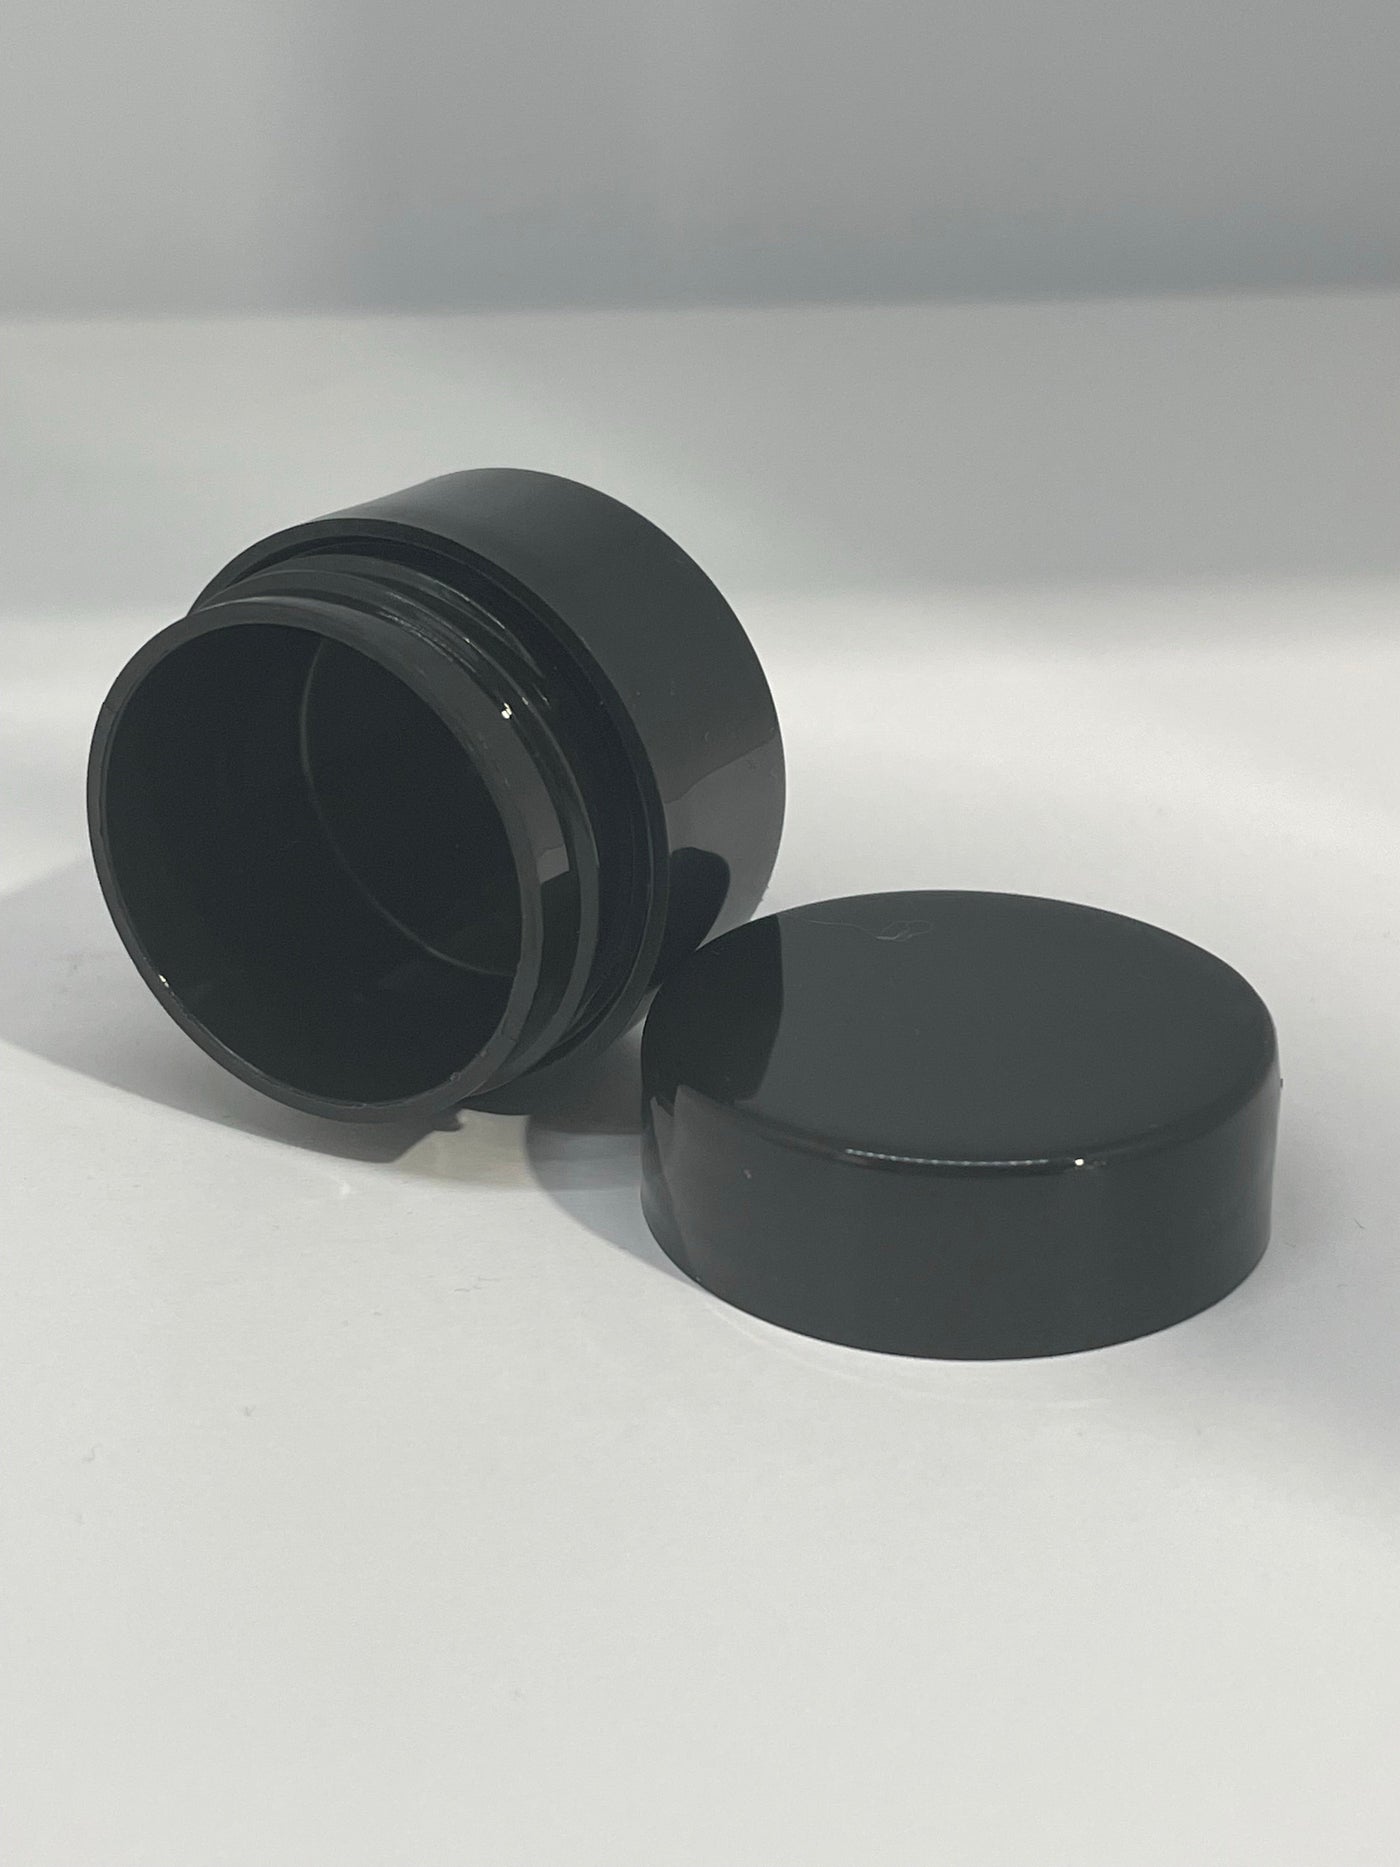 Black Empty Pot - Small 7ml capacity